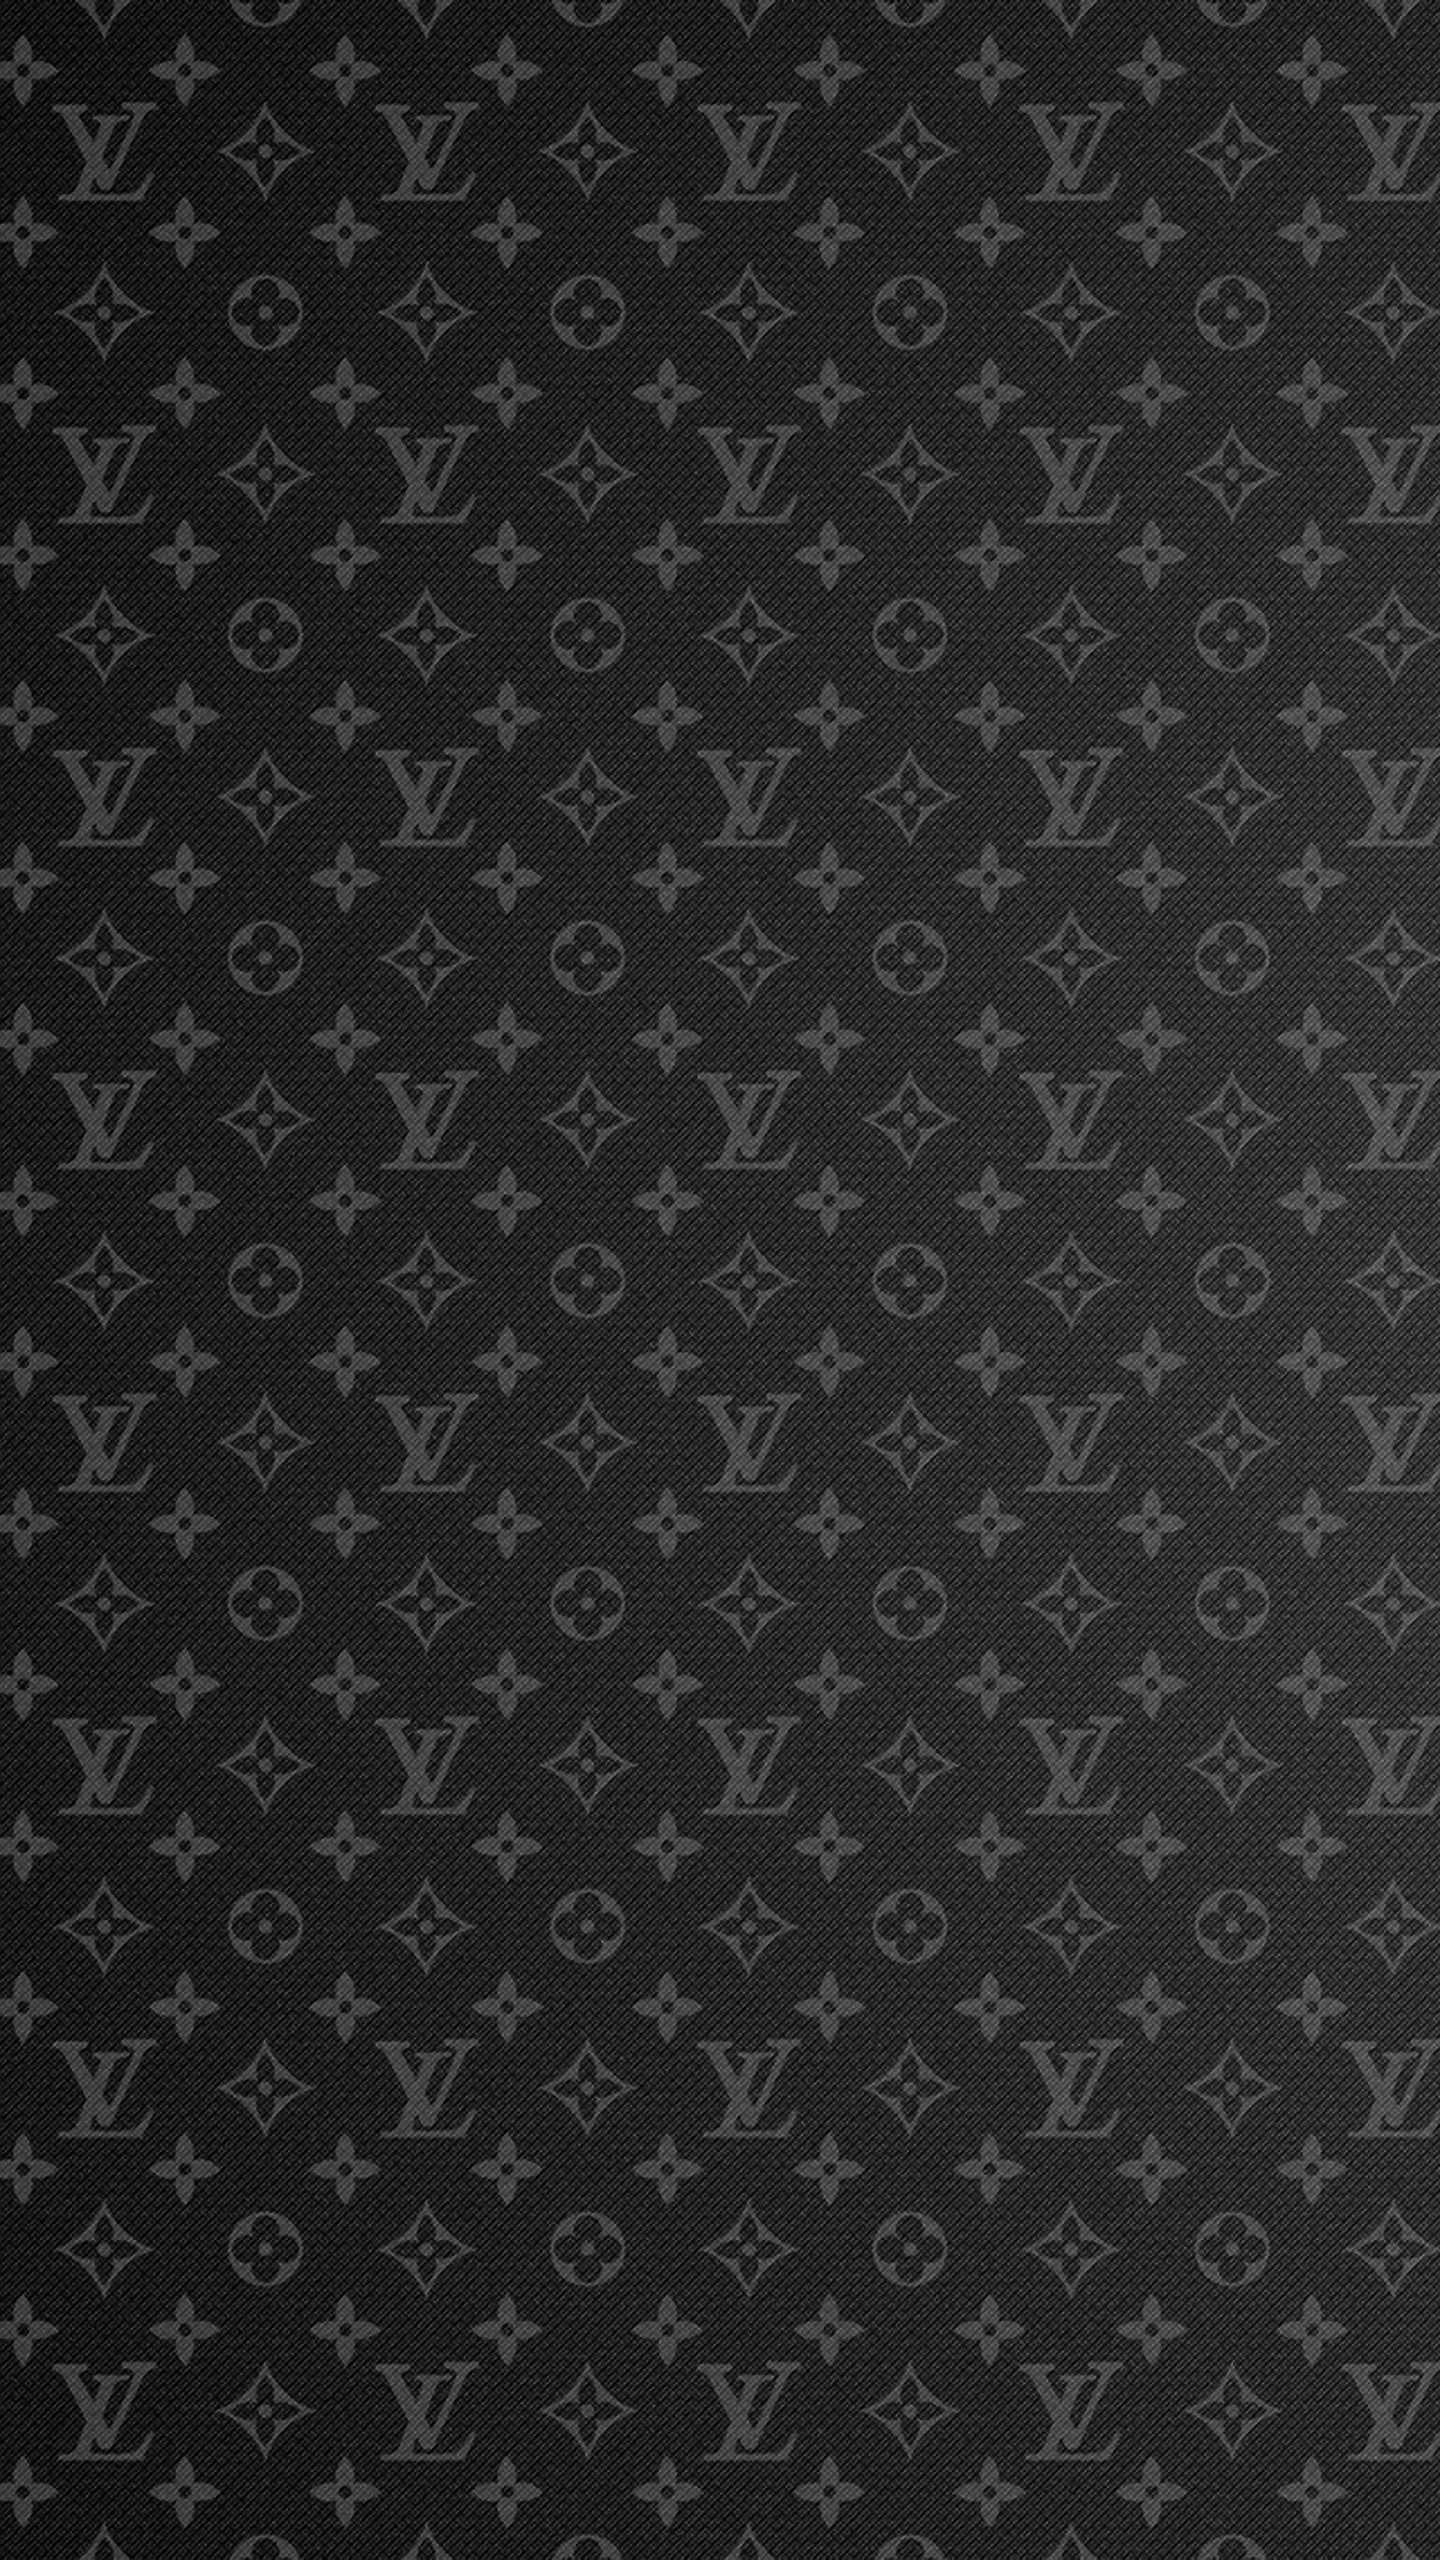 HD Lv Wallpaper - iXpap